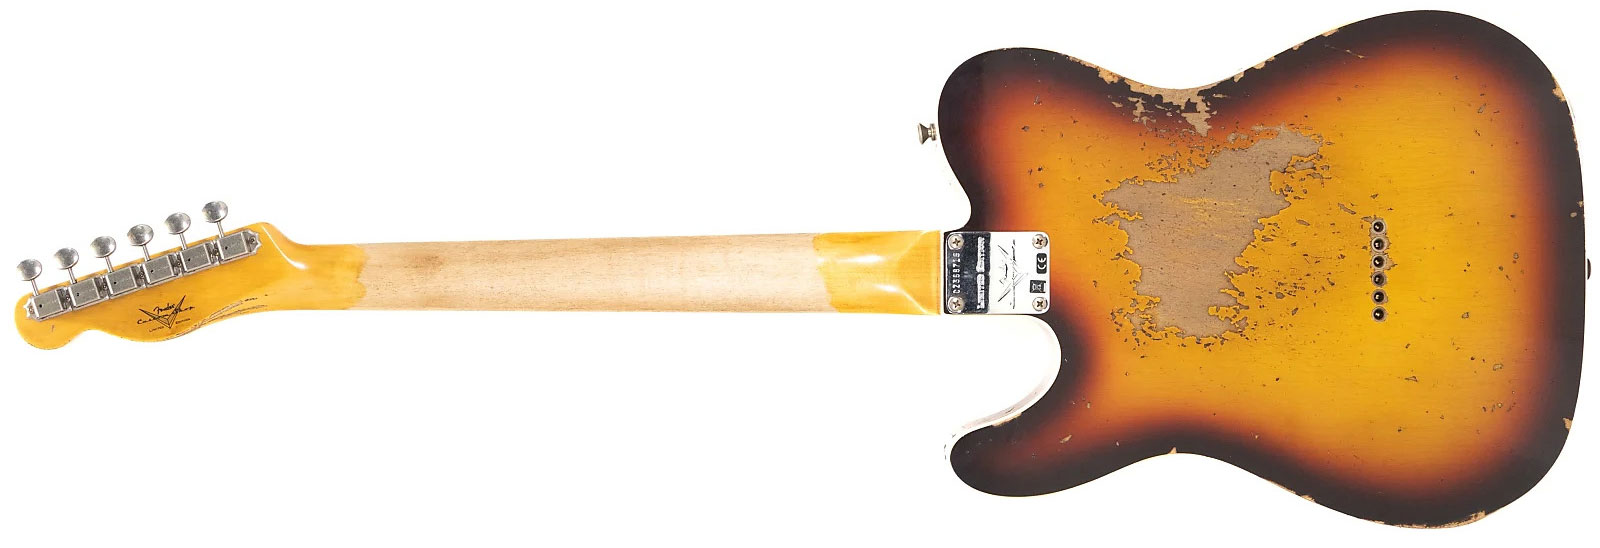 Fender Custom Shop Tele 1960 2s Ht Rw - Heavy Relic Chocolate 3-color Sunburst - Guitare Électrique Forme Tel - Variation 2